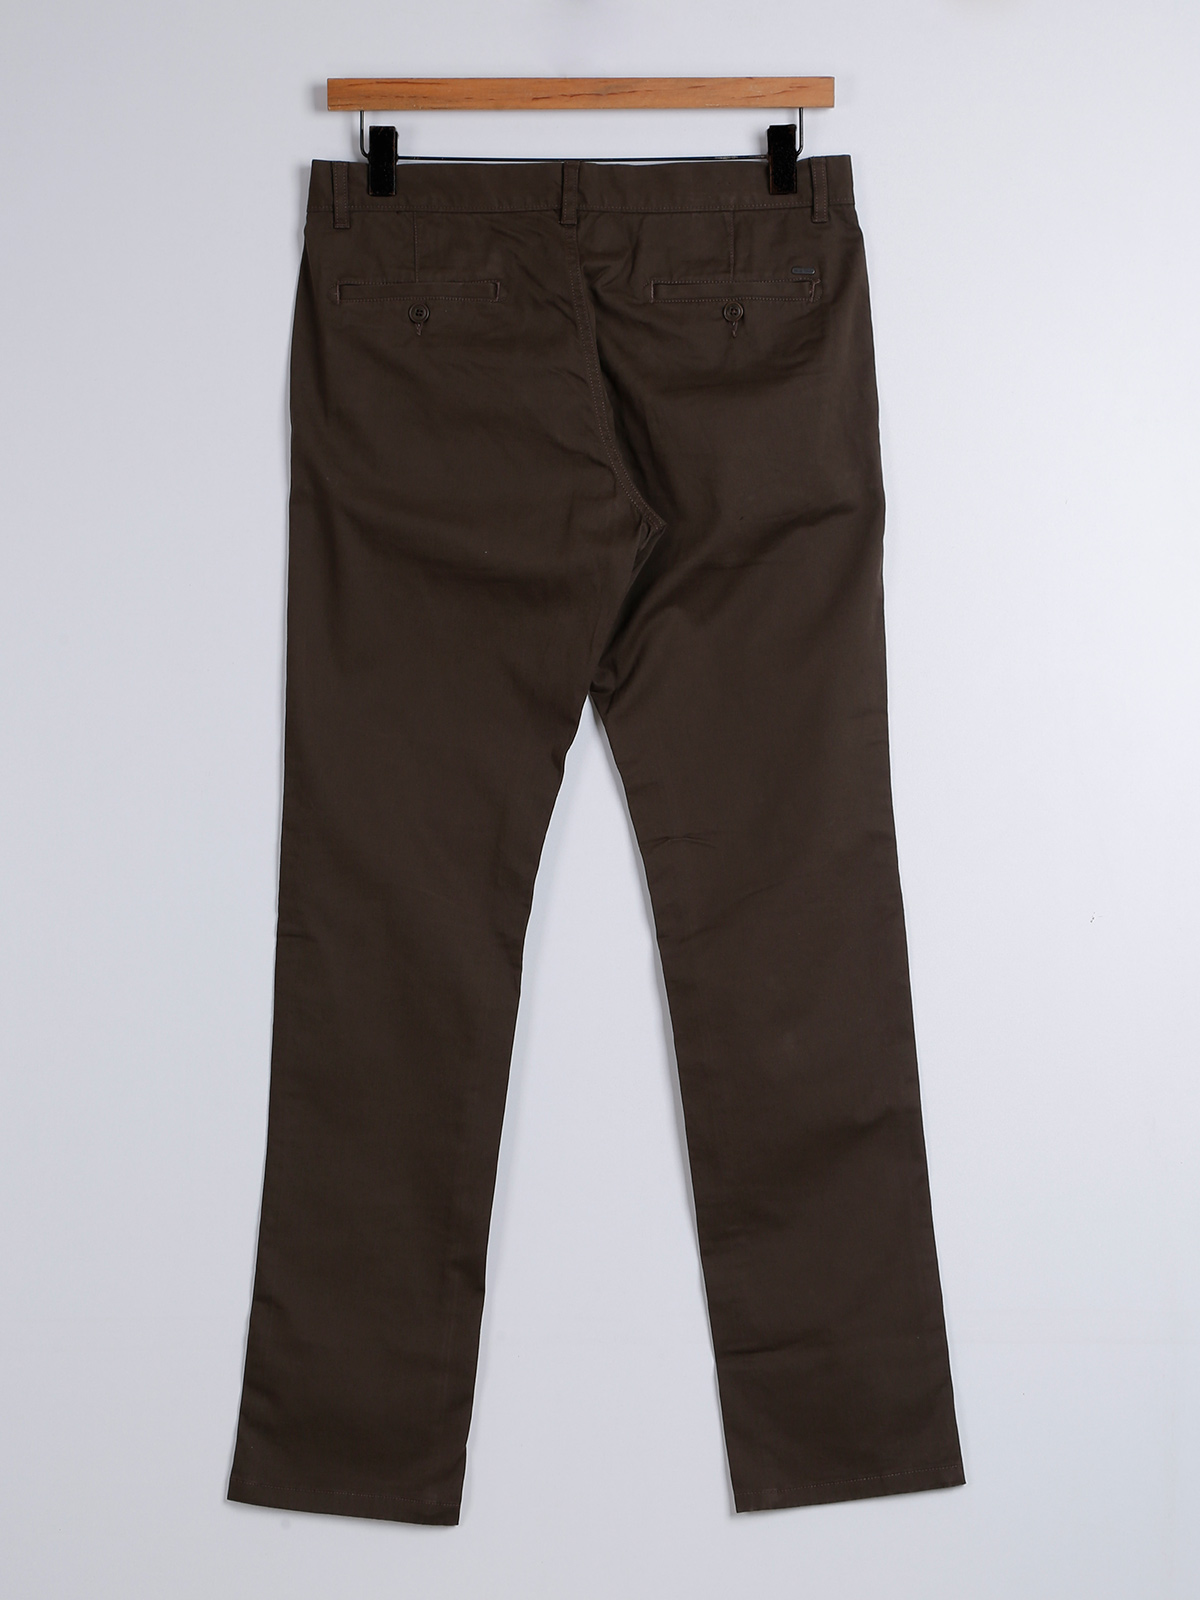 Indian Terrain pista green cotton trouser - G3-MCT0831 | G3fashion.com |  Green cotton, Trousers, Cotton